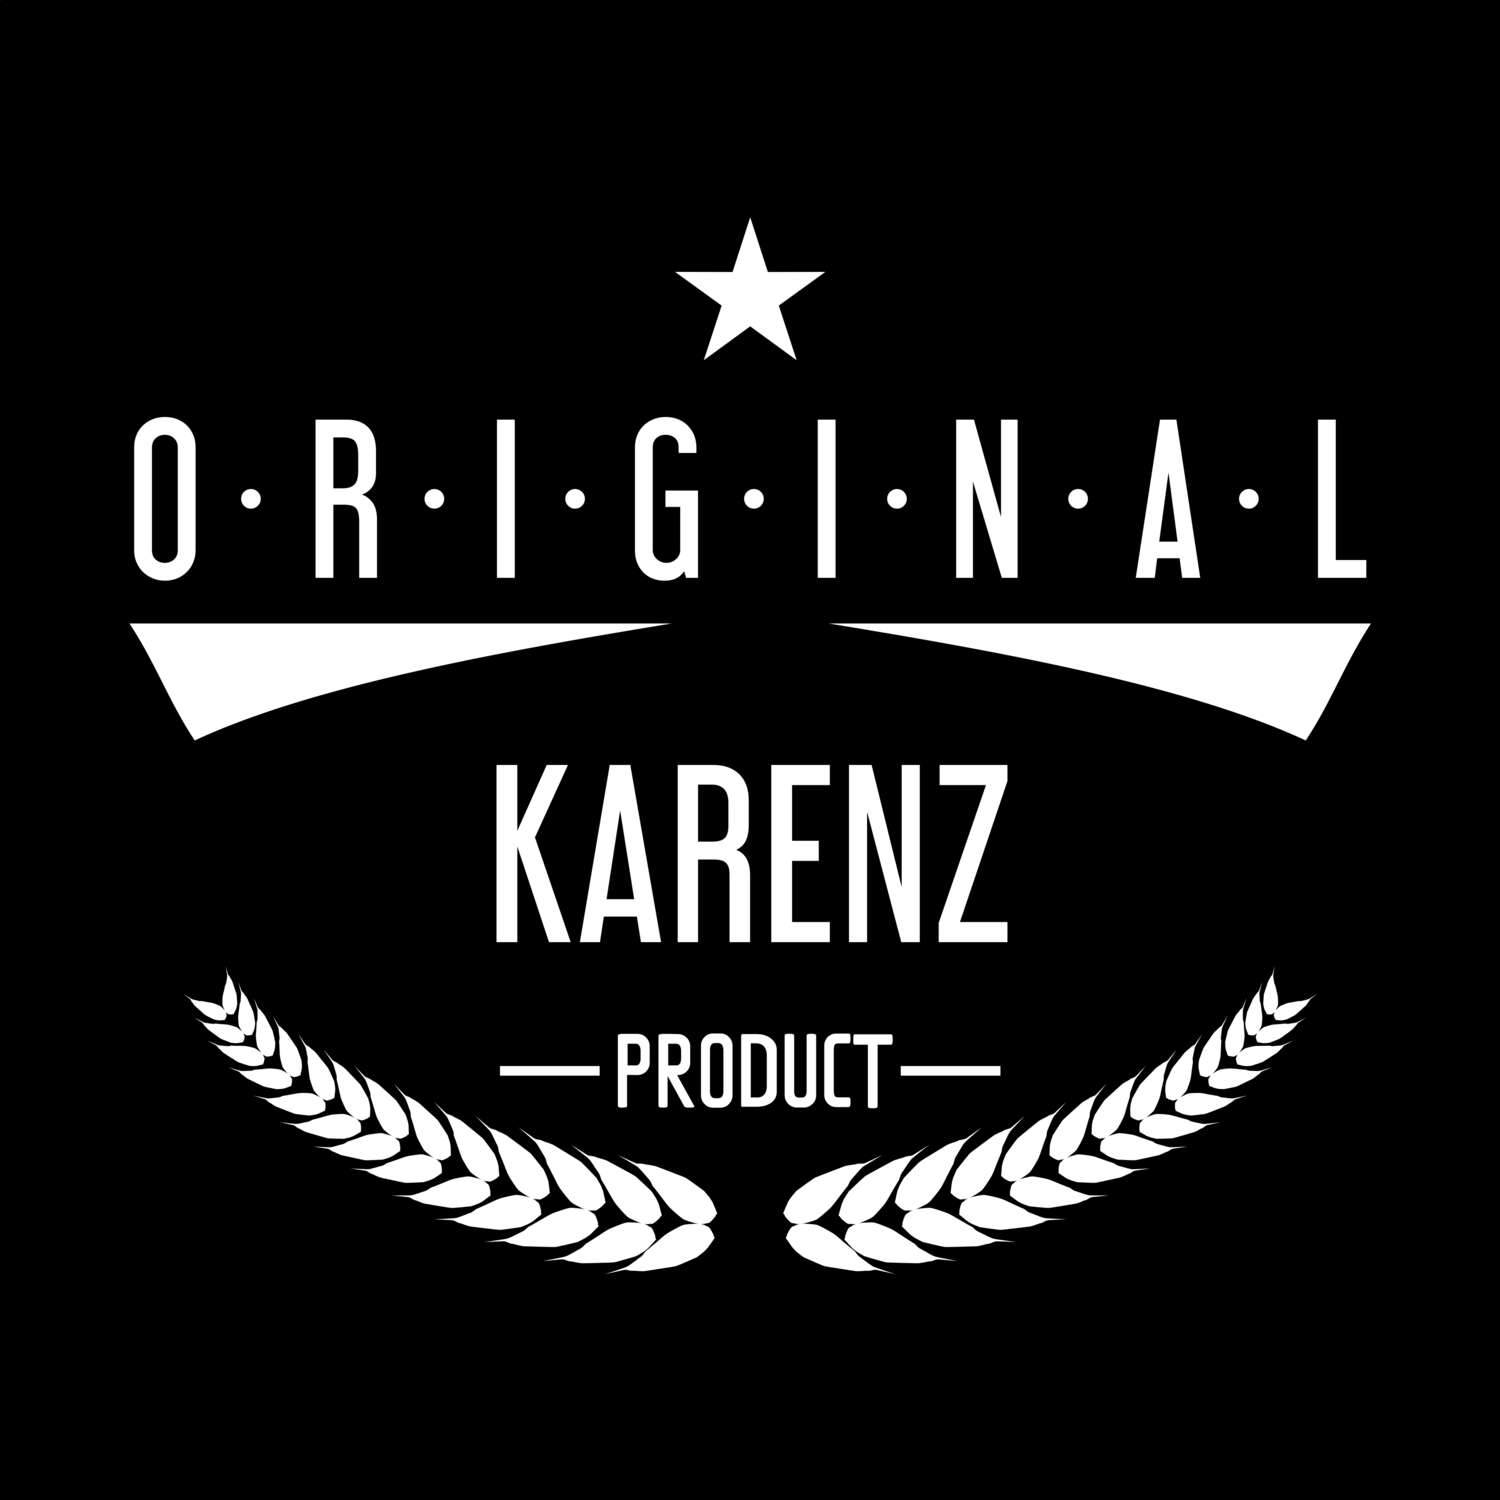 Karenz T-Shirt »Original Product«